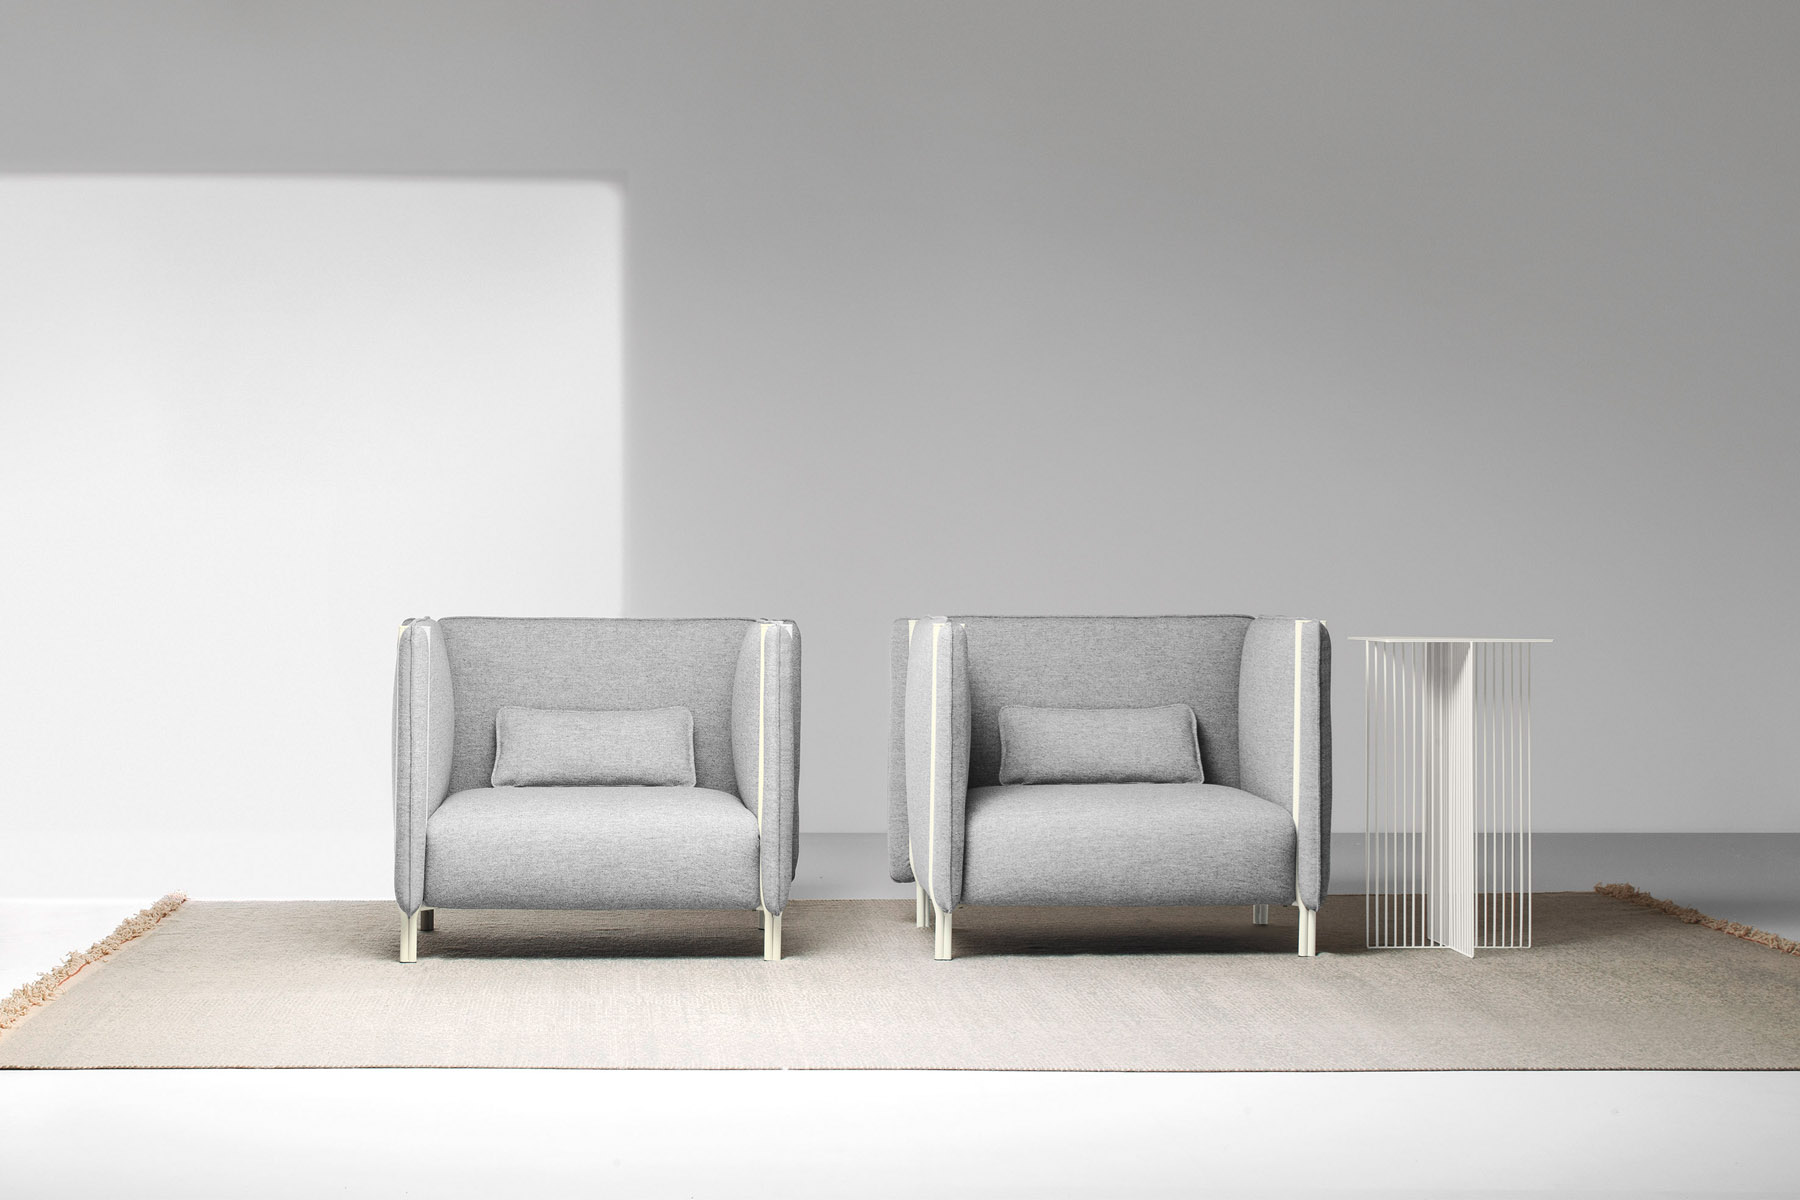 Pinch LACIVIDINA modern italian designer furniture 018